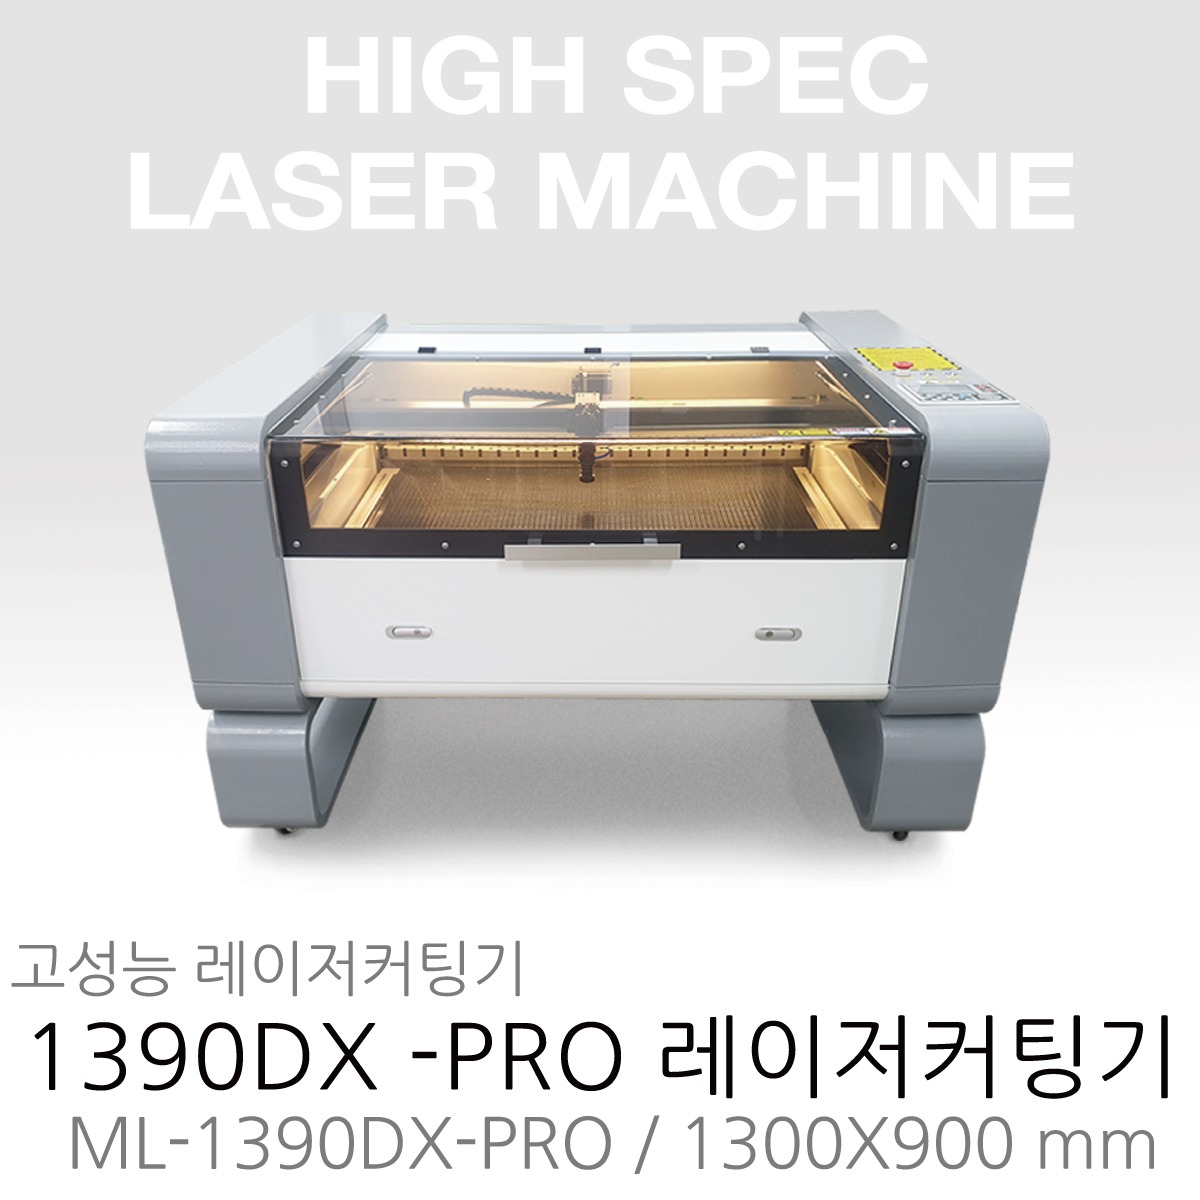 1390DX-Pro 고성능 레이저 커팅기